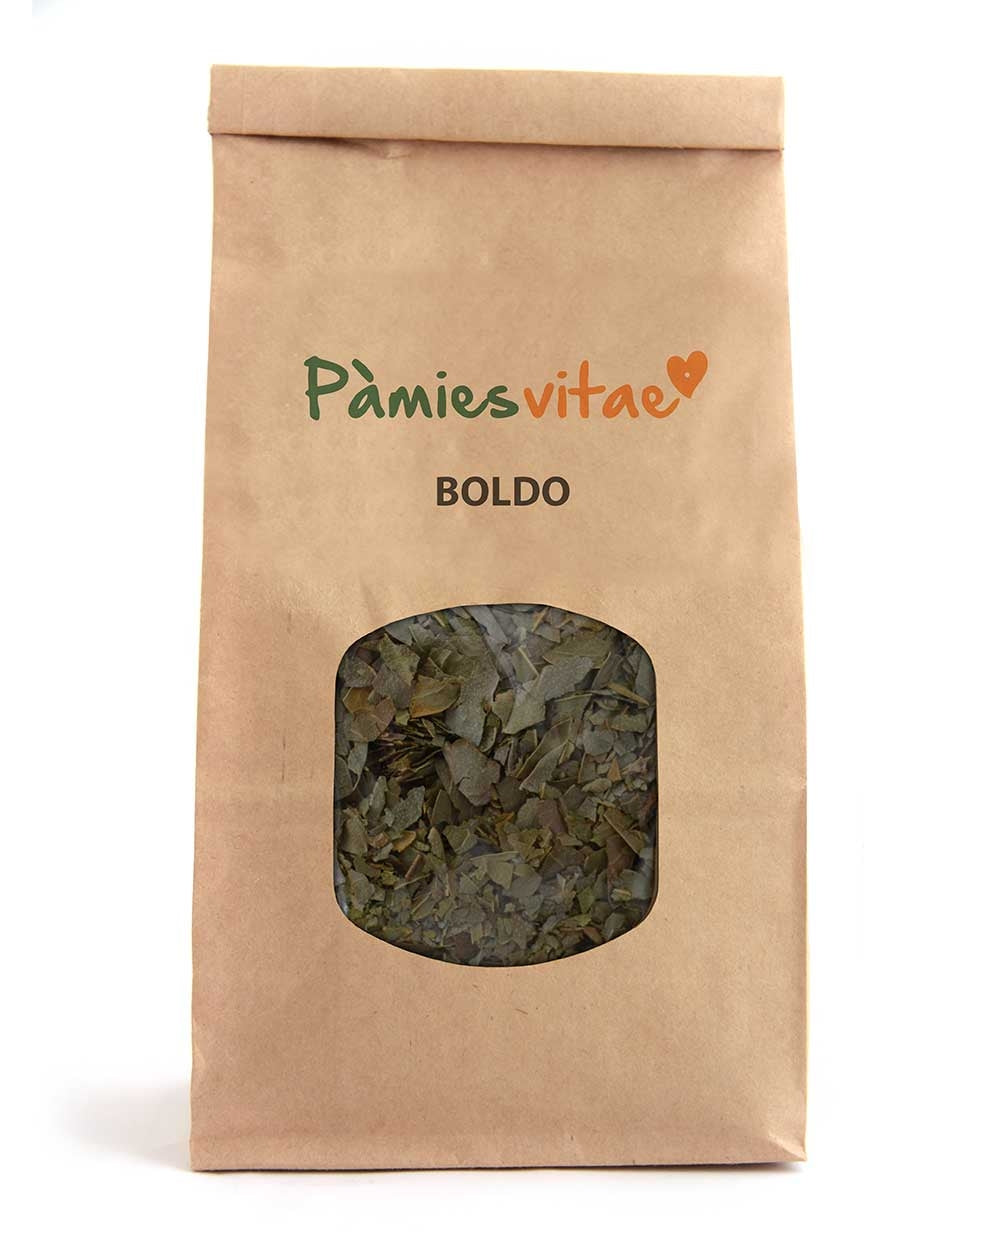 BOLDO - Peamus boldus